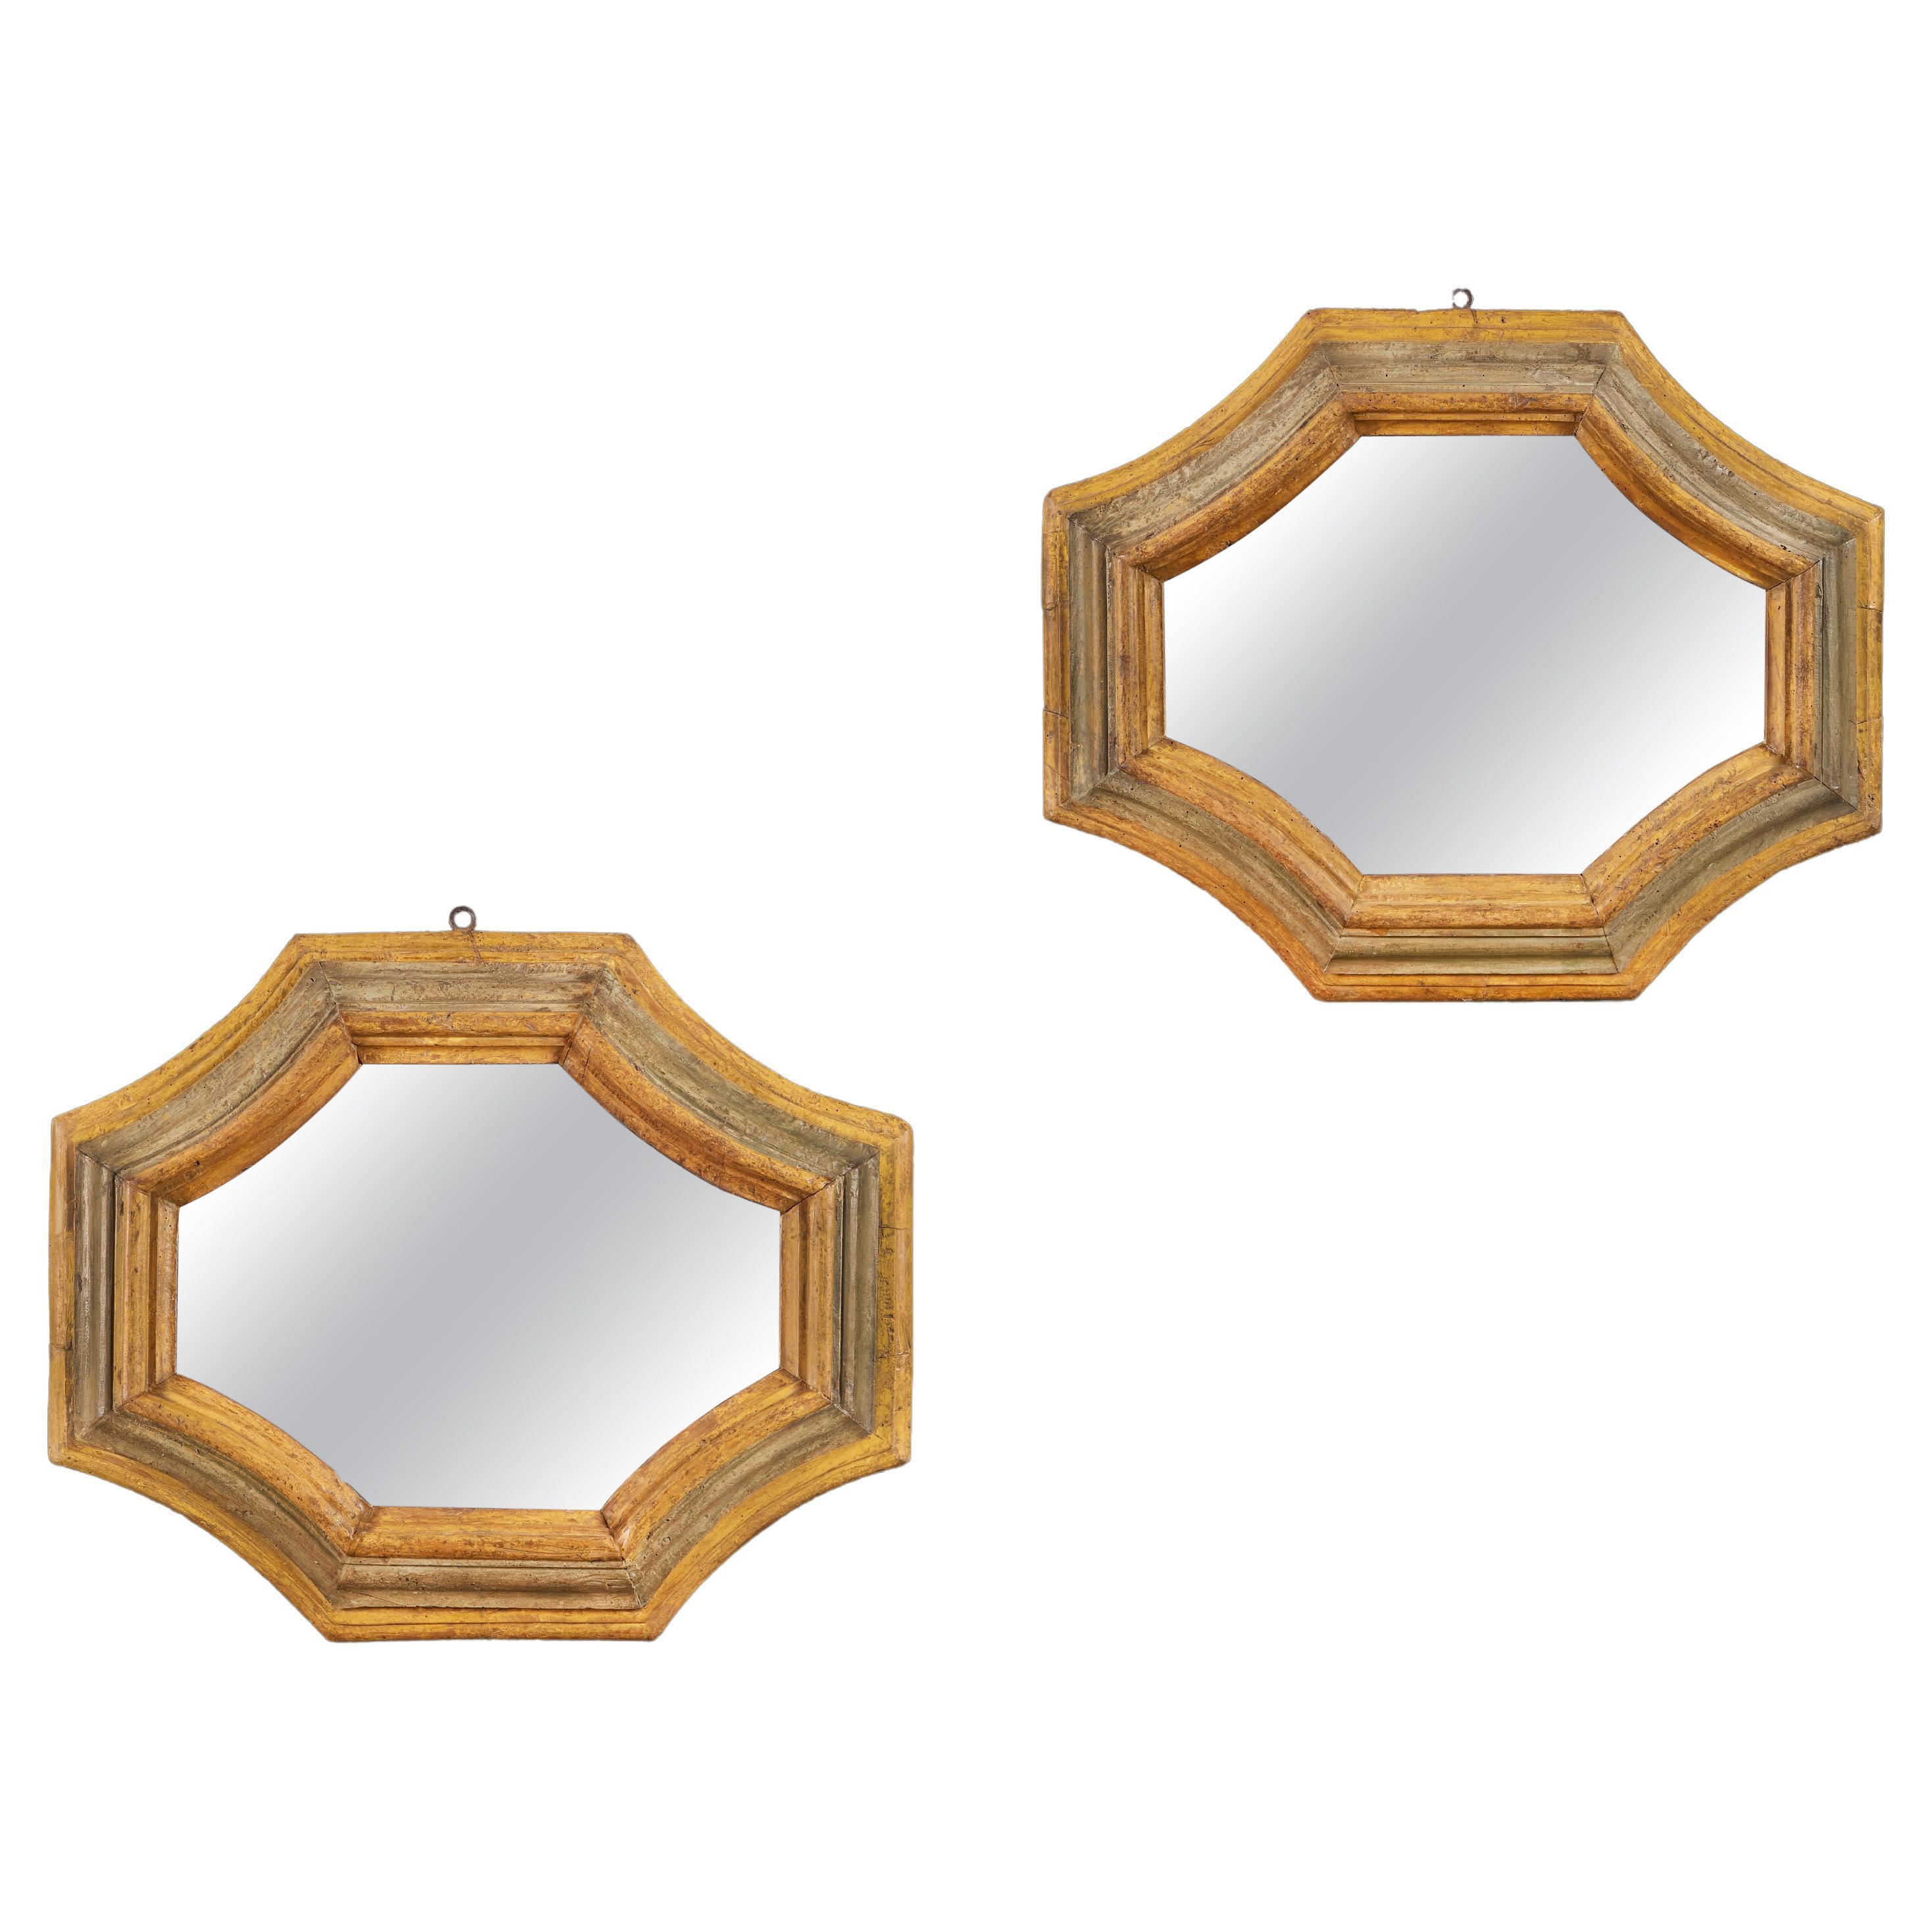 Paire inhabituelle de miroirs octogonaux toscans du 18ème siècle